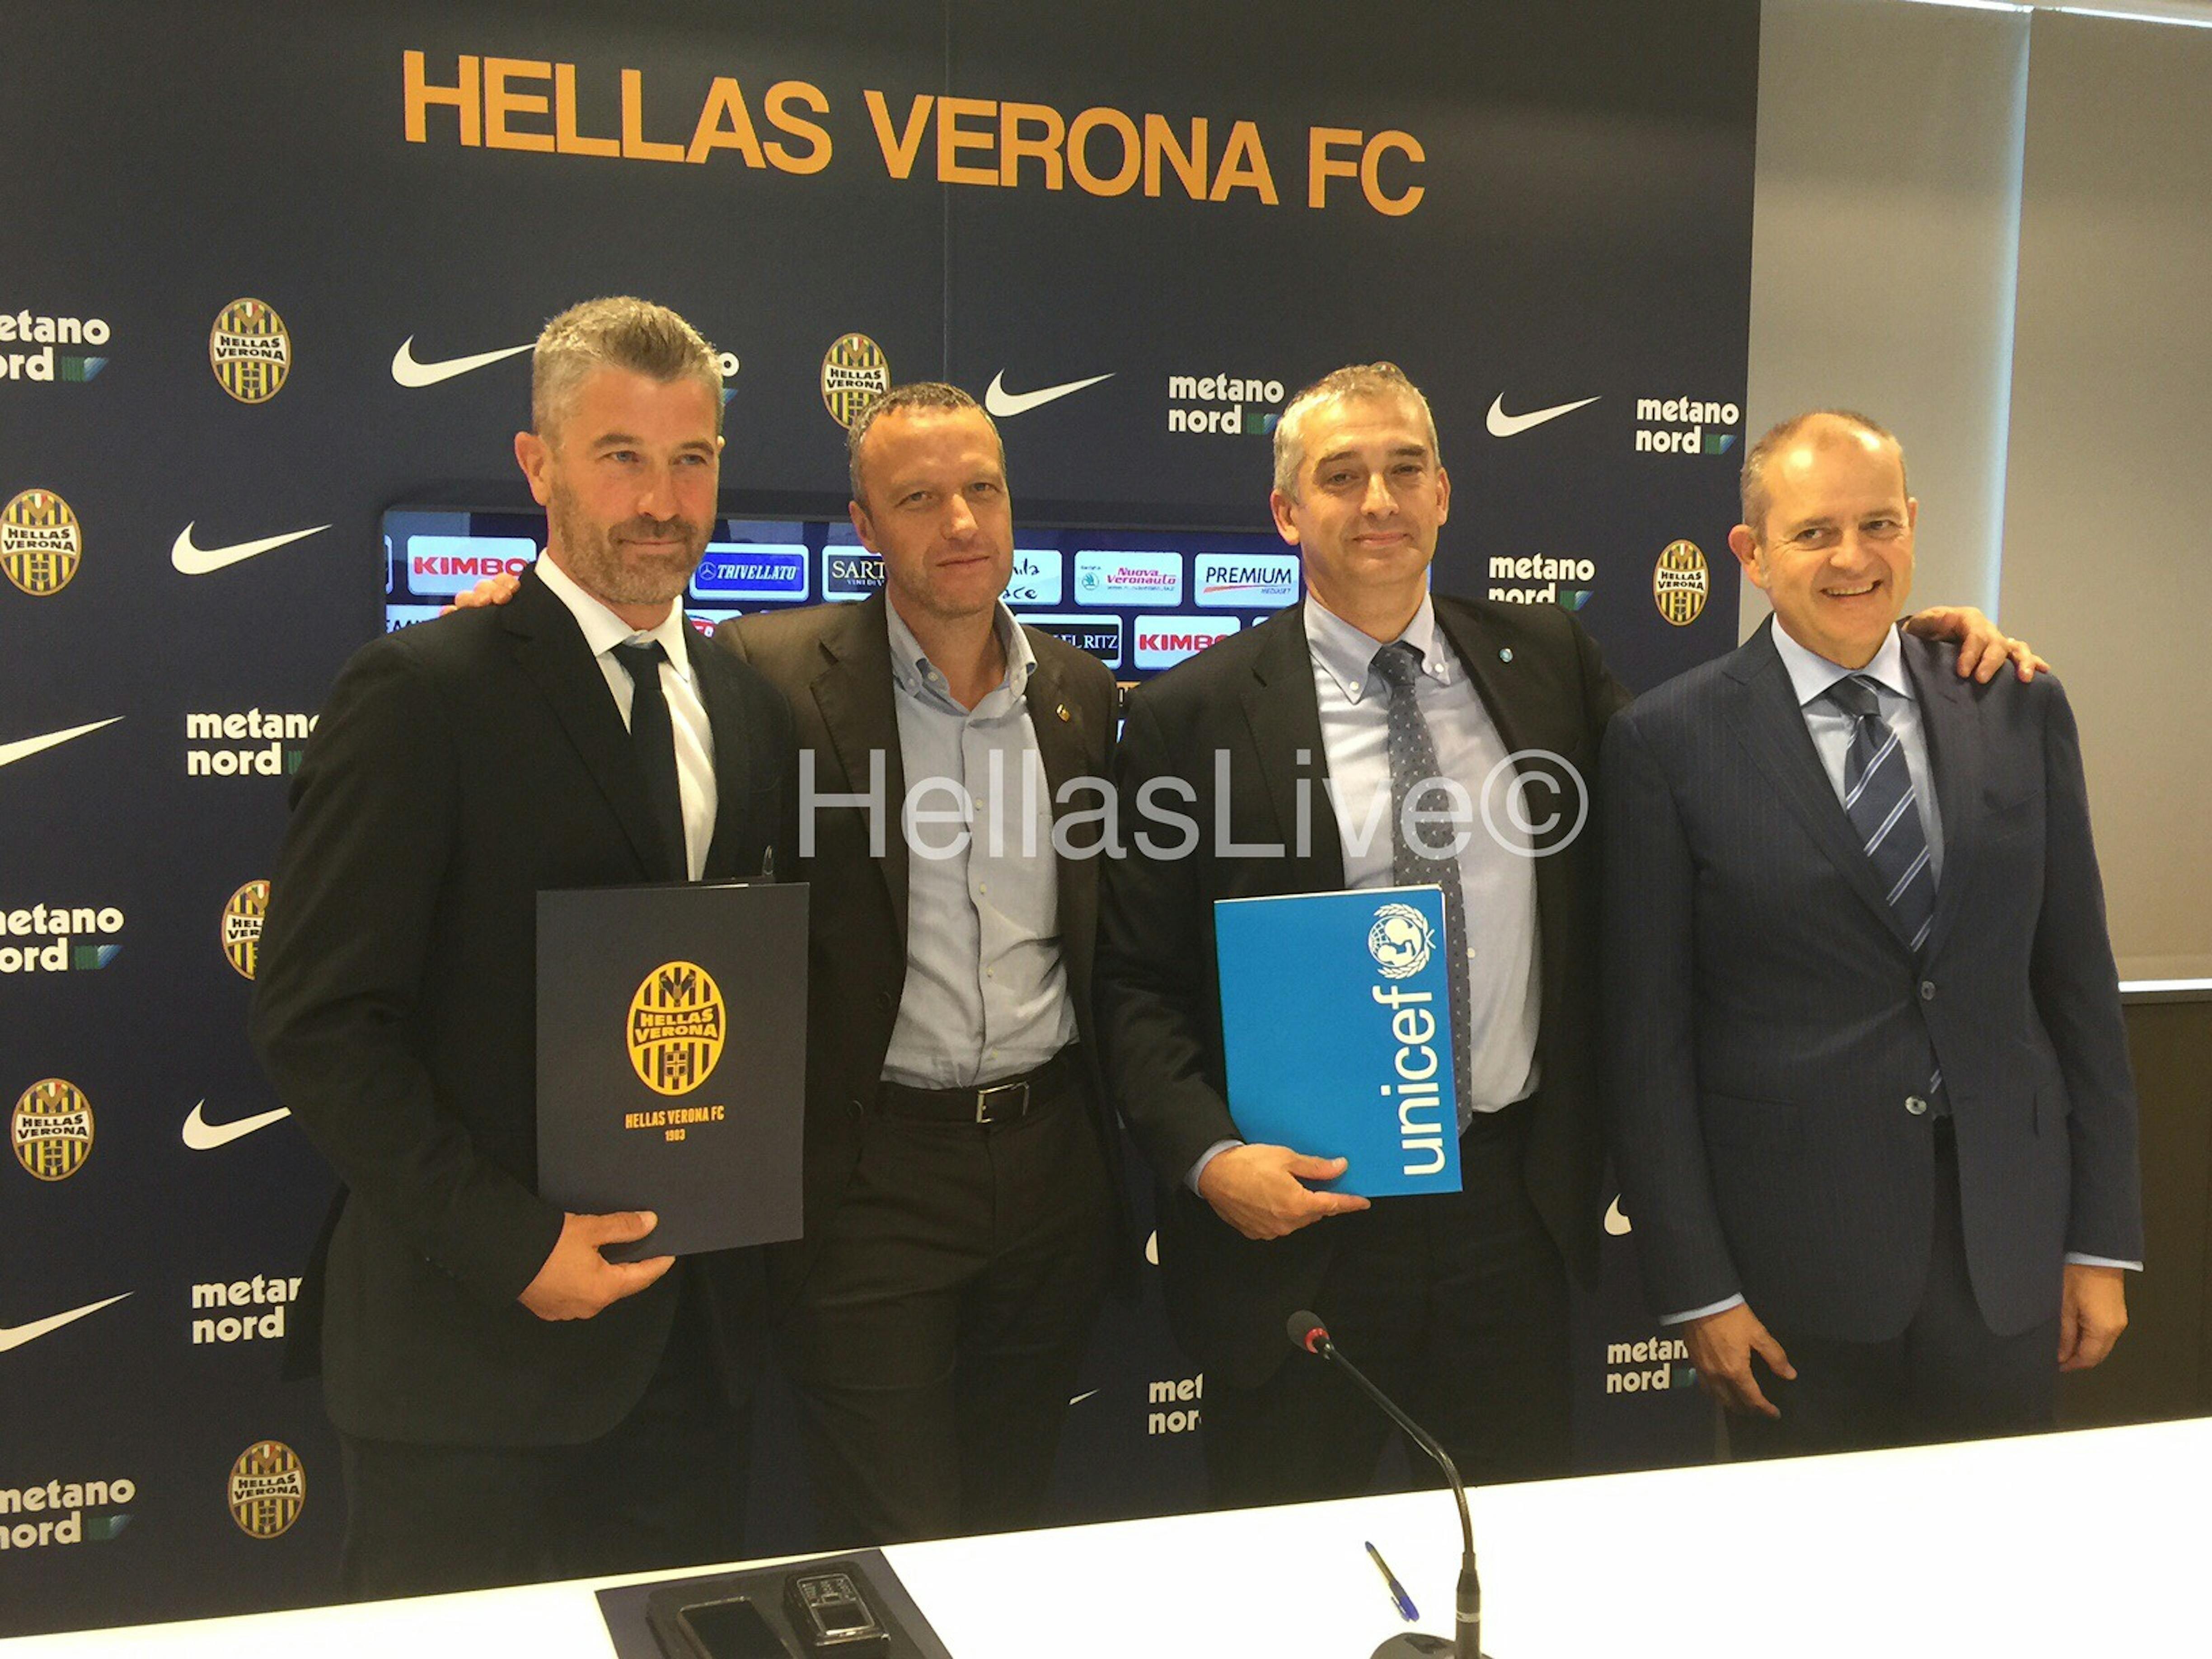 Il DG dell'Hellas Verona Giovanni Gardini, il sindaco di Verona Flavio Tosi e il DG dell'UNICEF Italia Paolo Rozera - ©Hellas Verona/2015